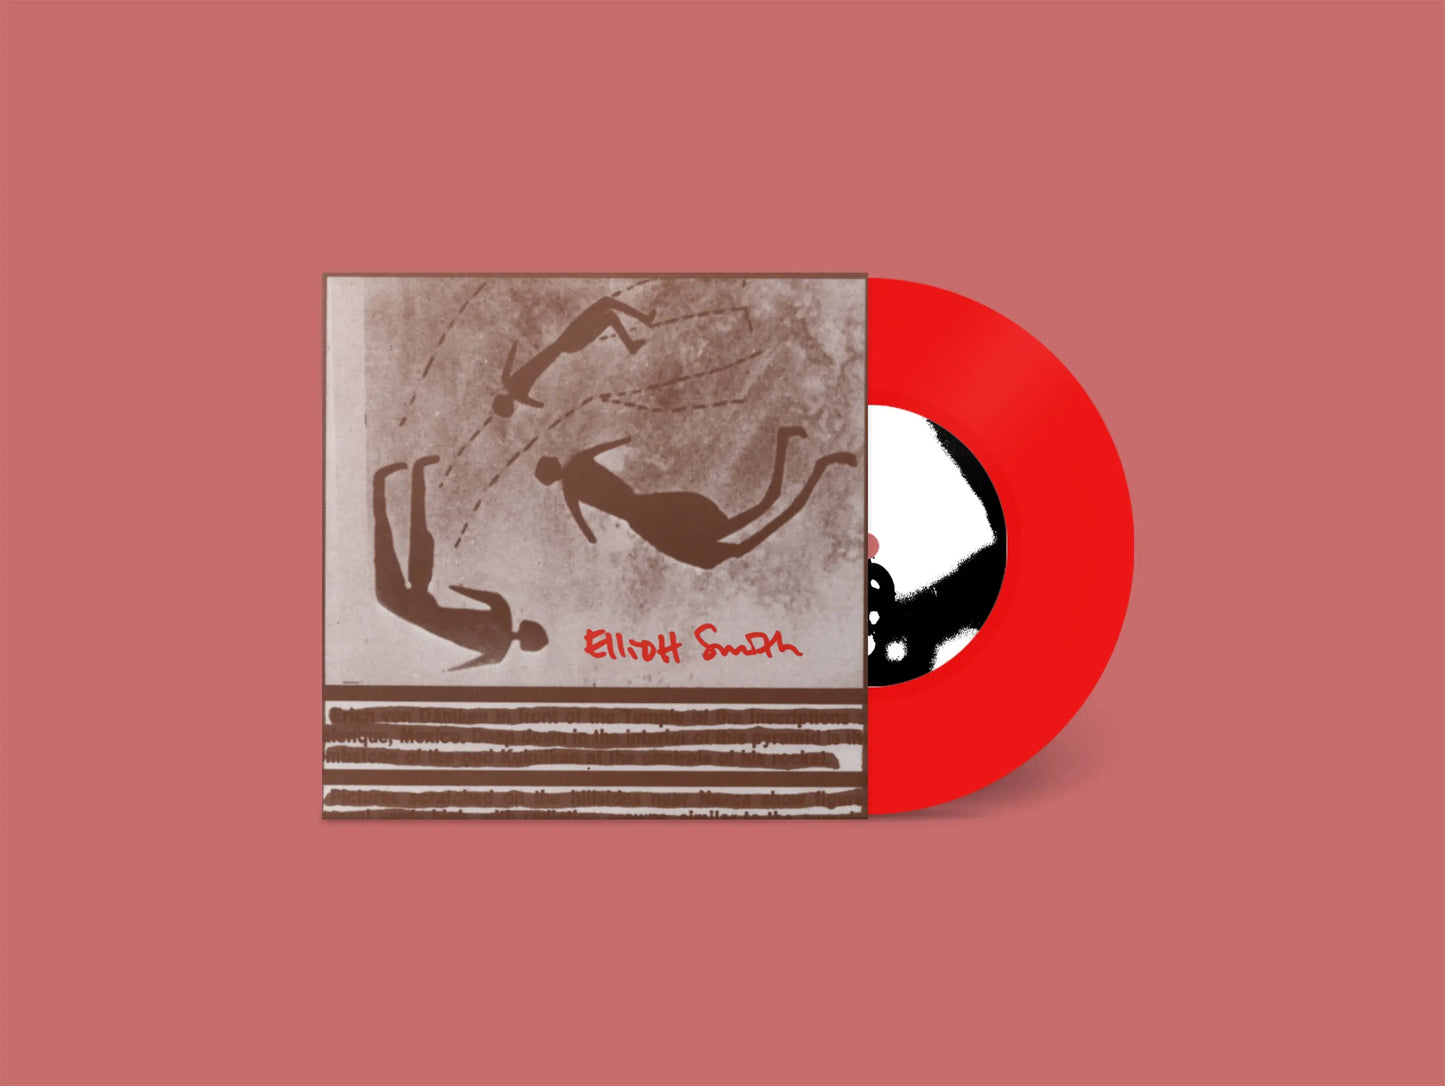 Elliott Smith - Needle In The Hay [7" Colored Vinyl Single]